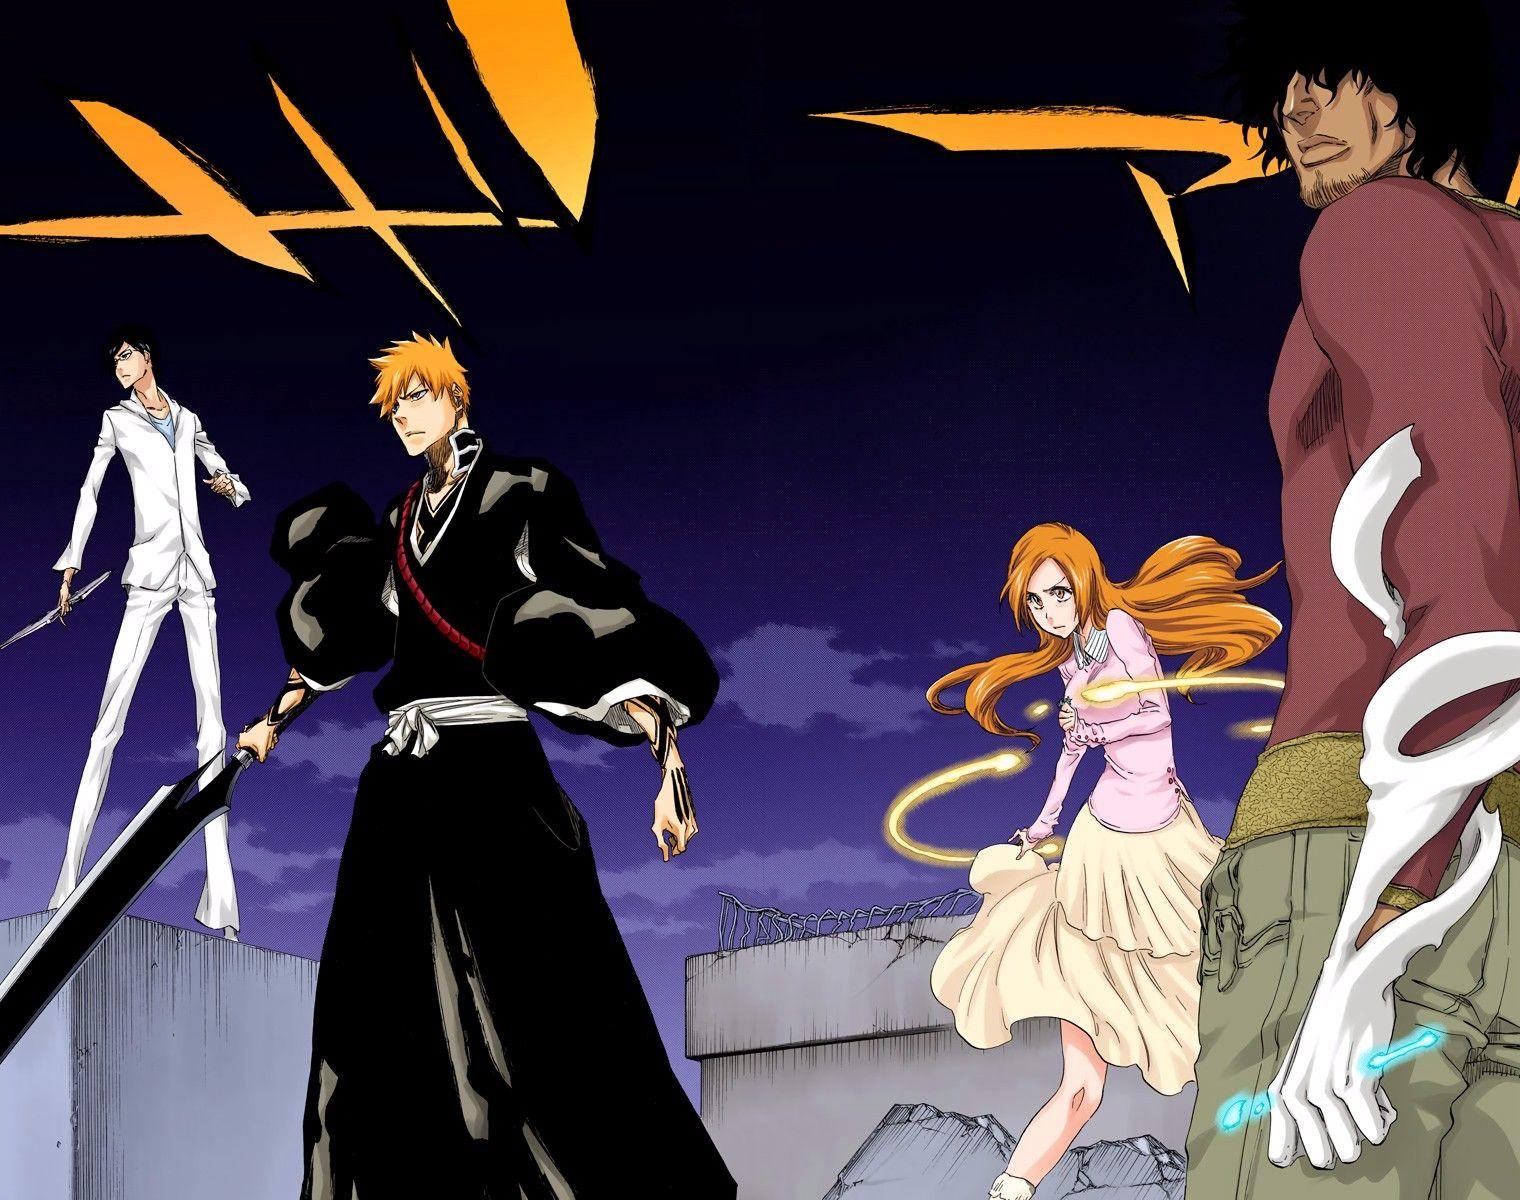 Ichigo, Sado, Orihime and Uryu confront the Hollows #Bleach Thousand